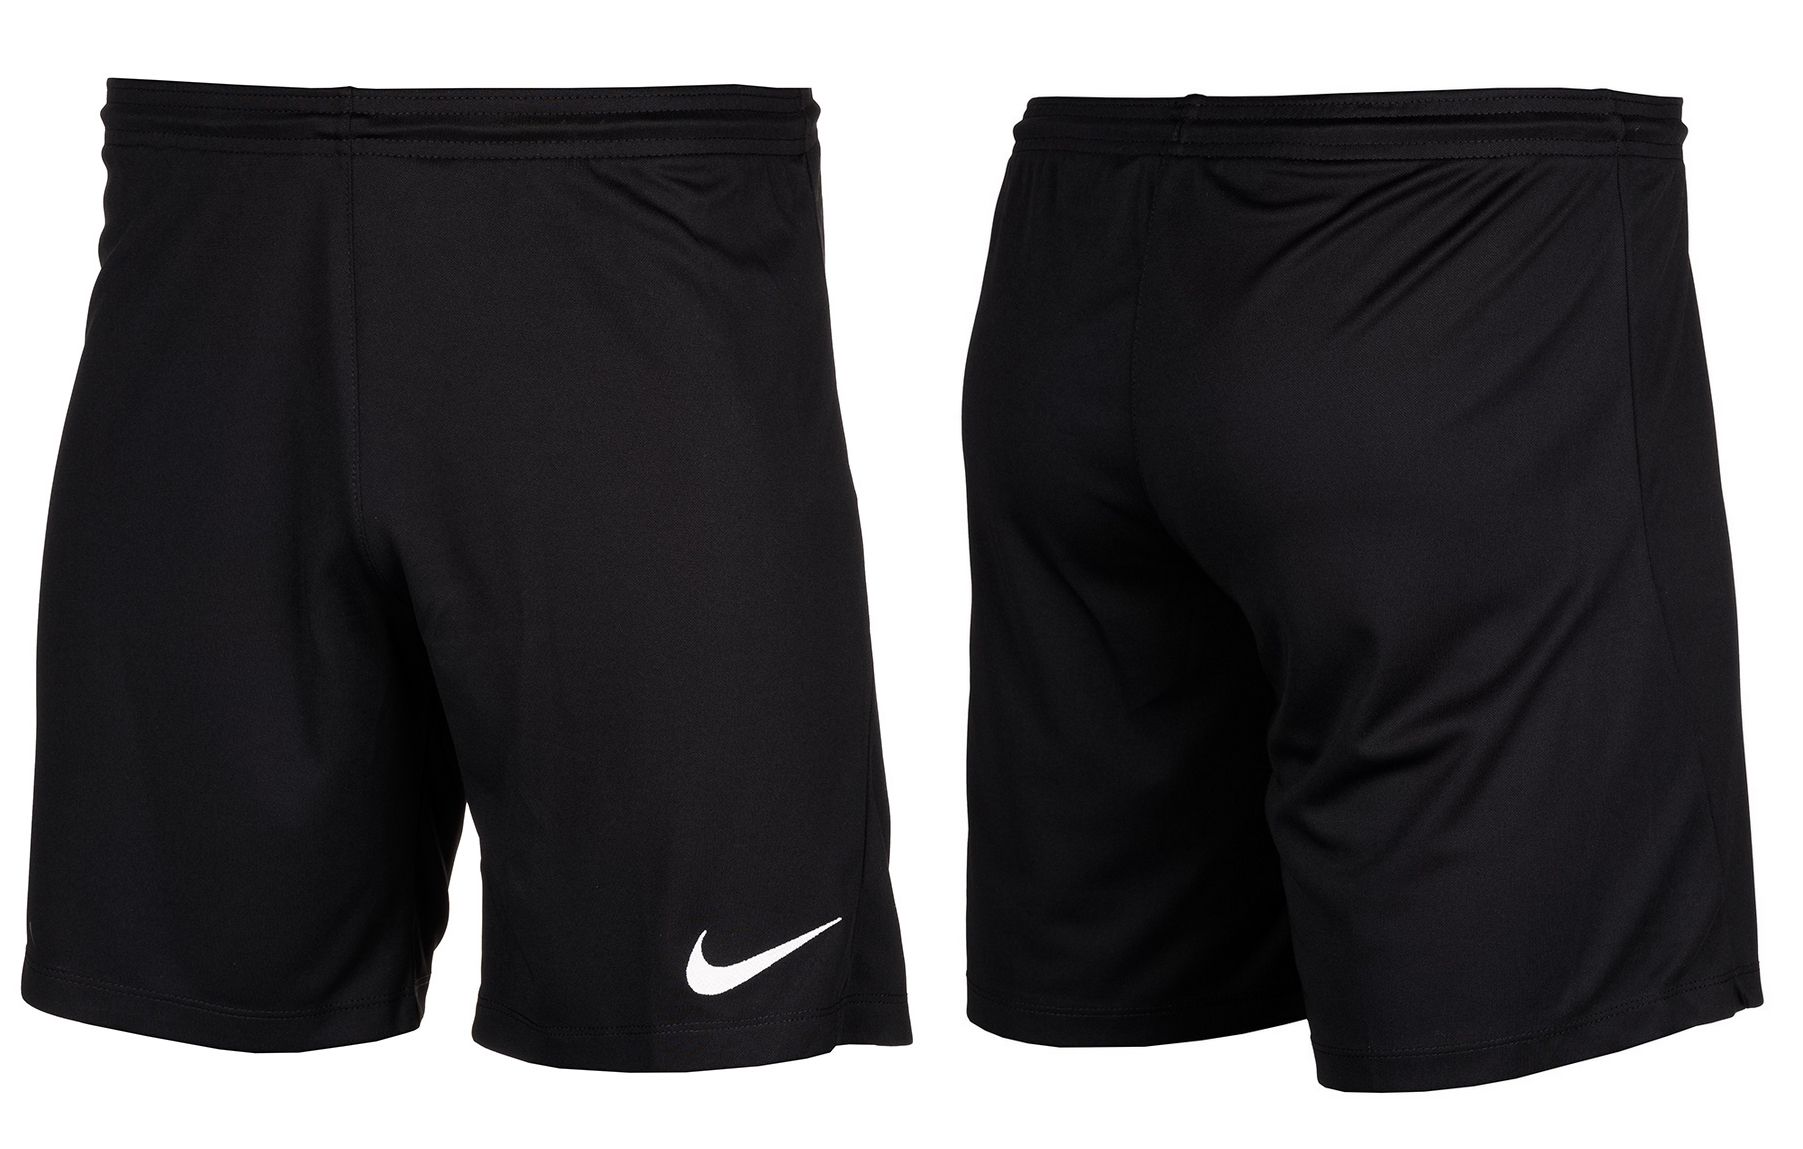 Nike męski strój sportowy koszulka spodenki Dry Park 20 Top BV6883 302/BV6855 010